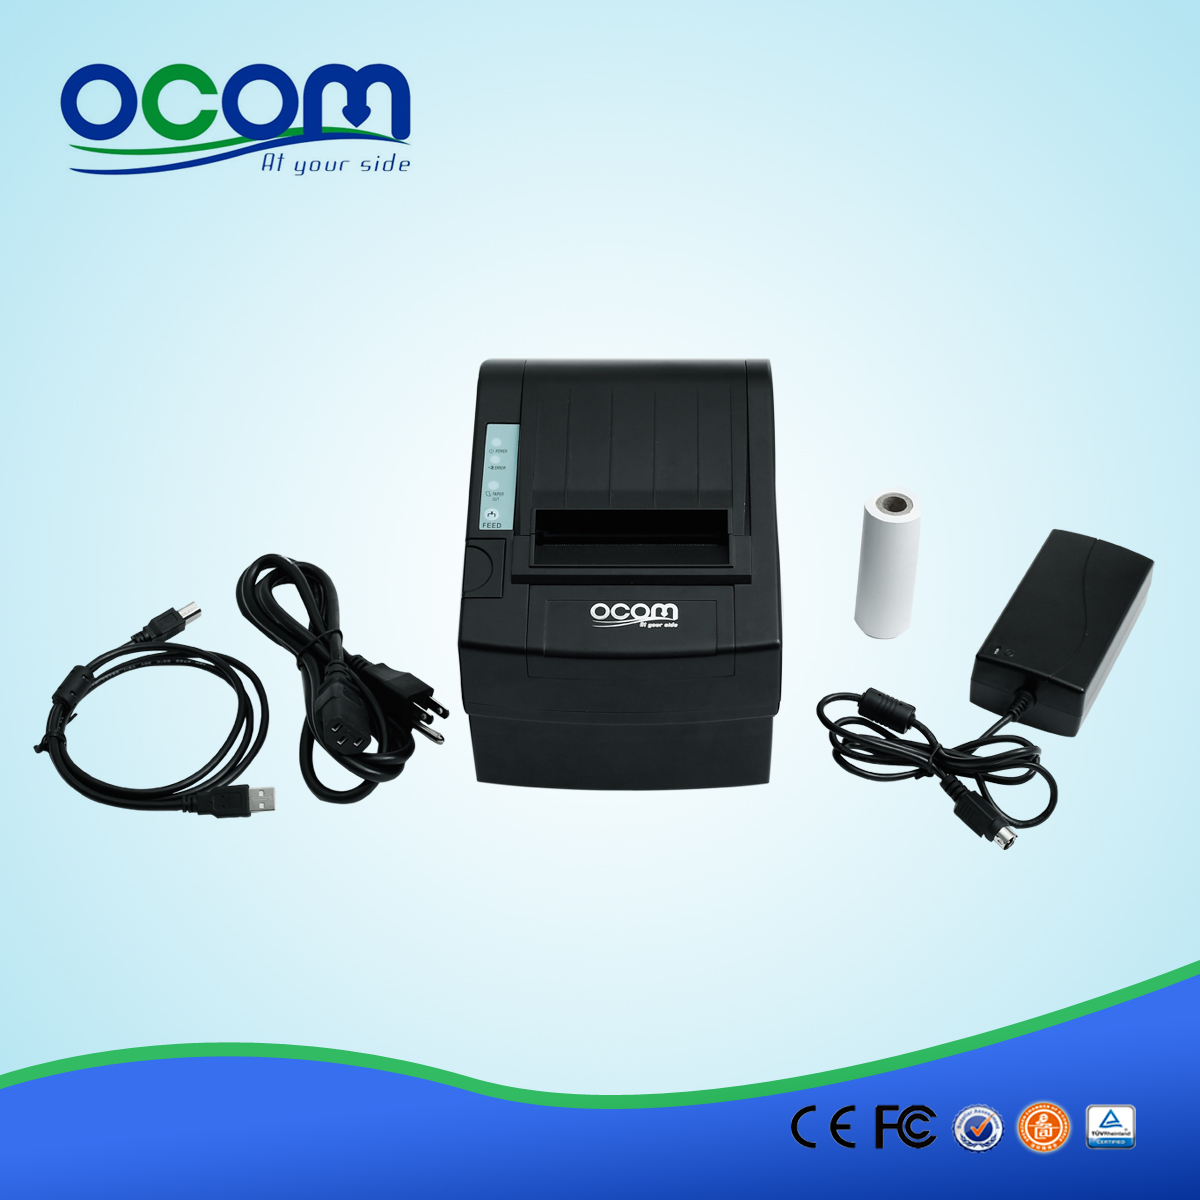 3 pouces Wifi Imprimante à reçu thermique OCPP-806-W